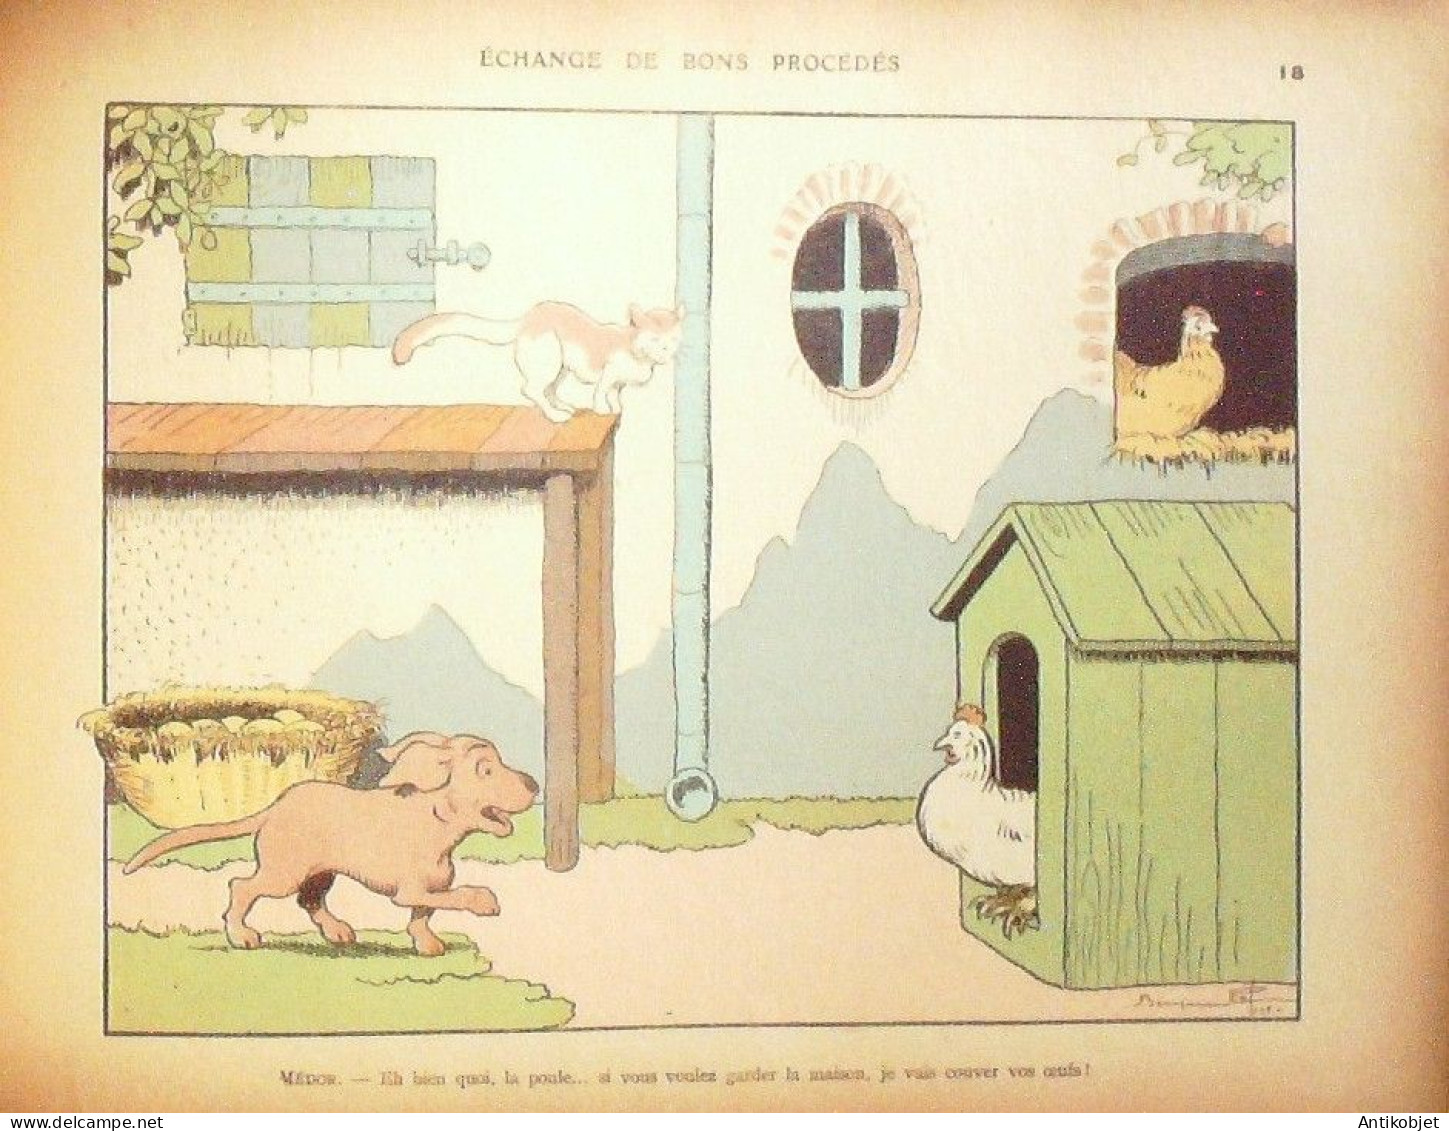 Rabier Benjamin Les animaux s'amusent Dupont Garnier Eo 1926